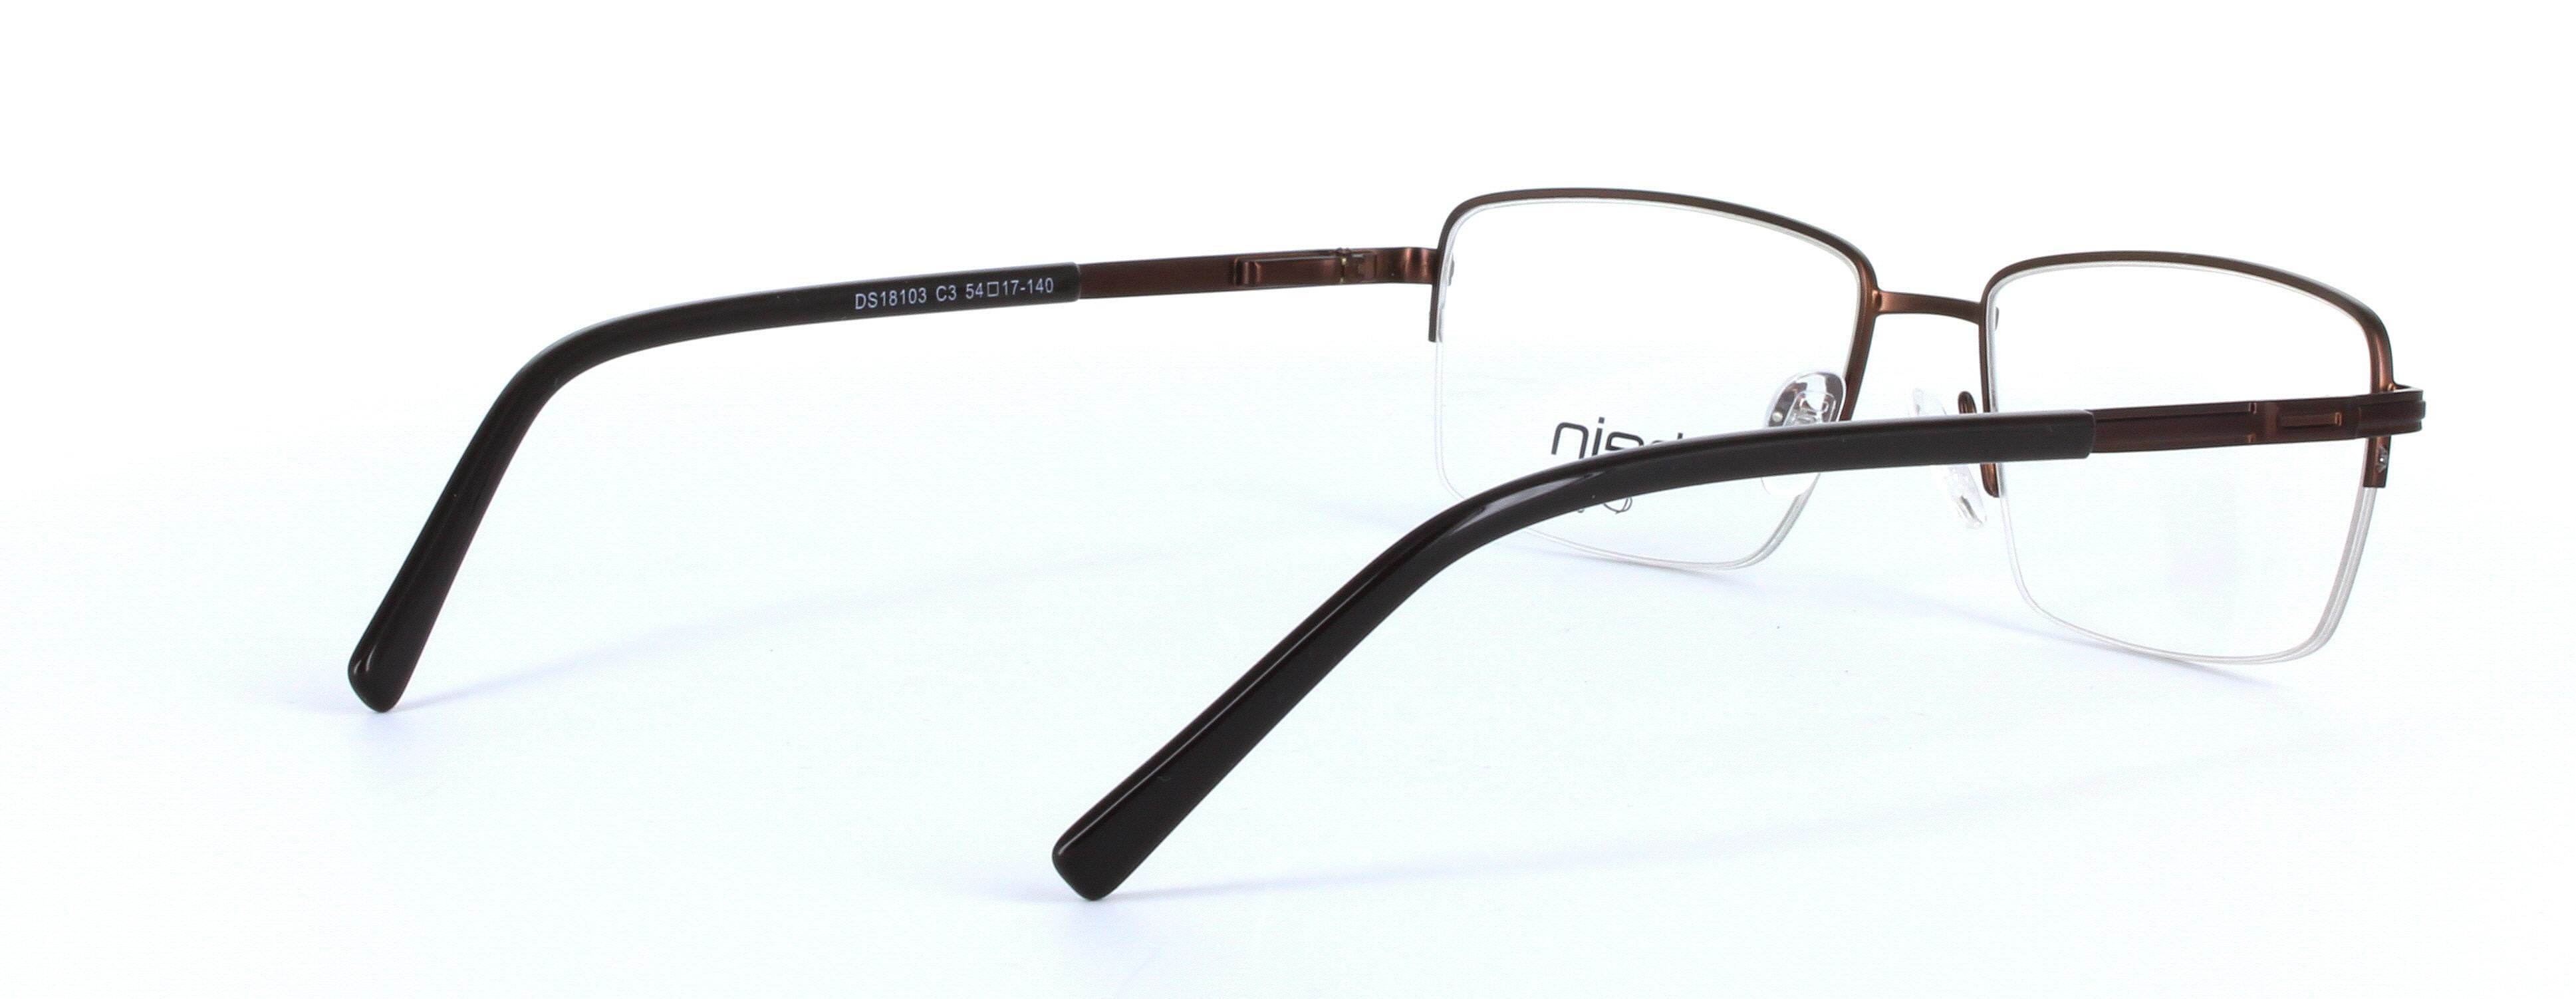 Denver Brown Semi Rimless Rectangular Metal Glasses - Image View 4